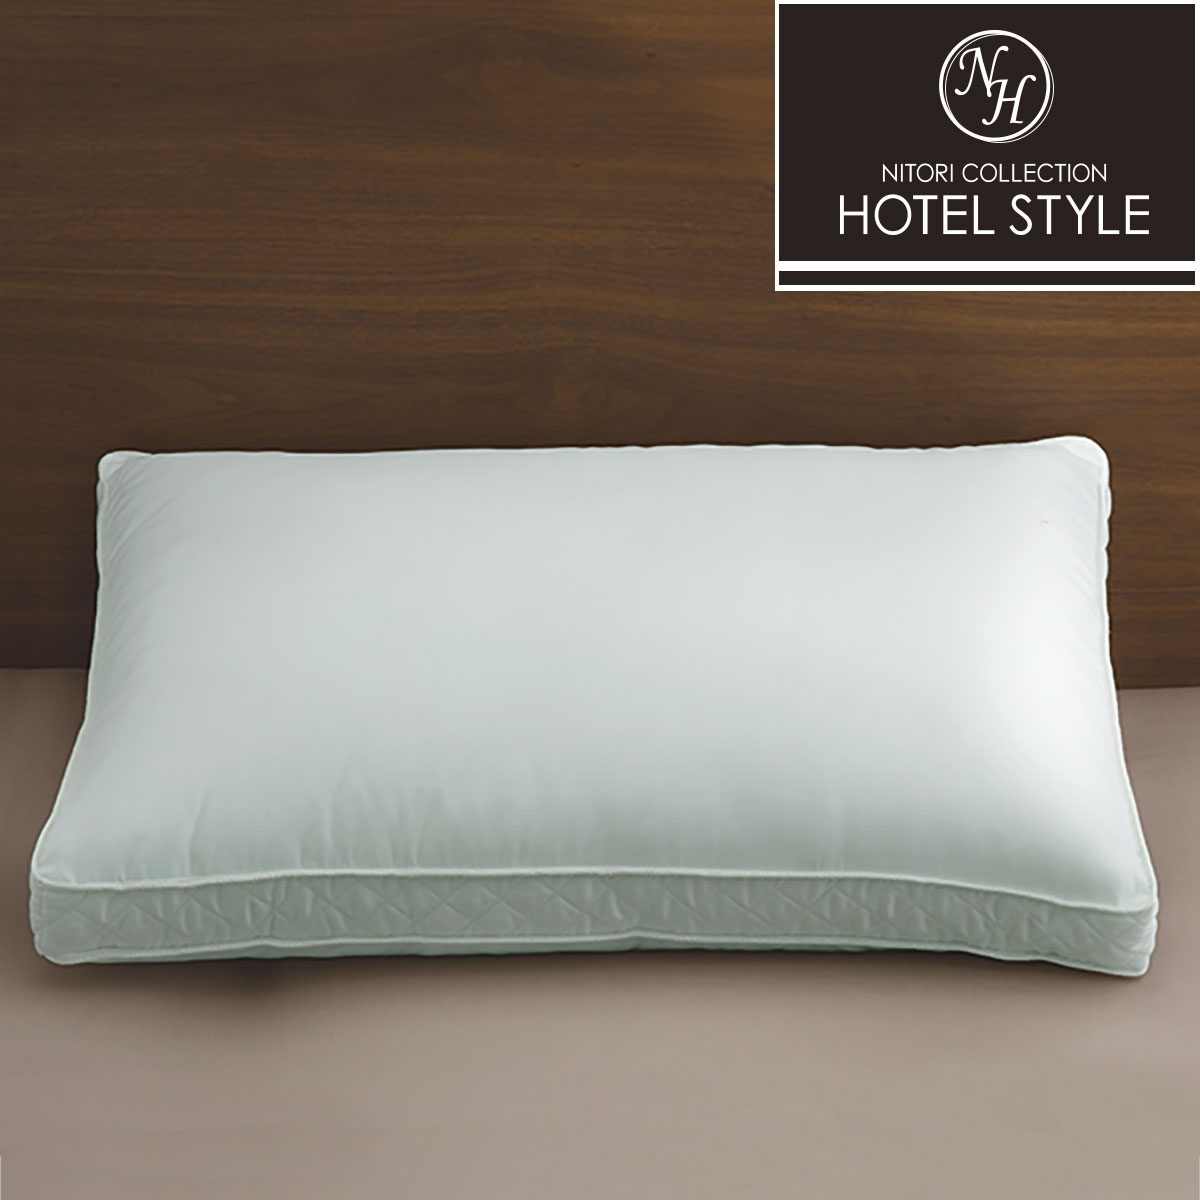 ホテルスタイル枕(セレクト) ニトリの写真